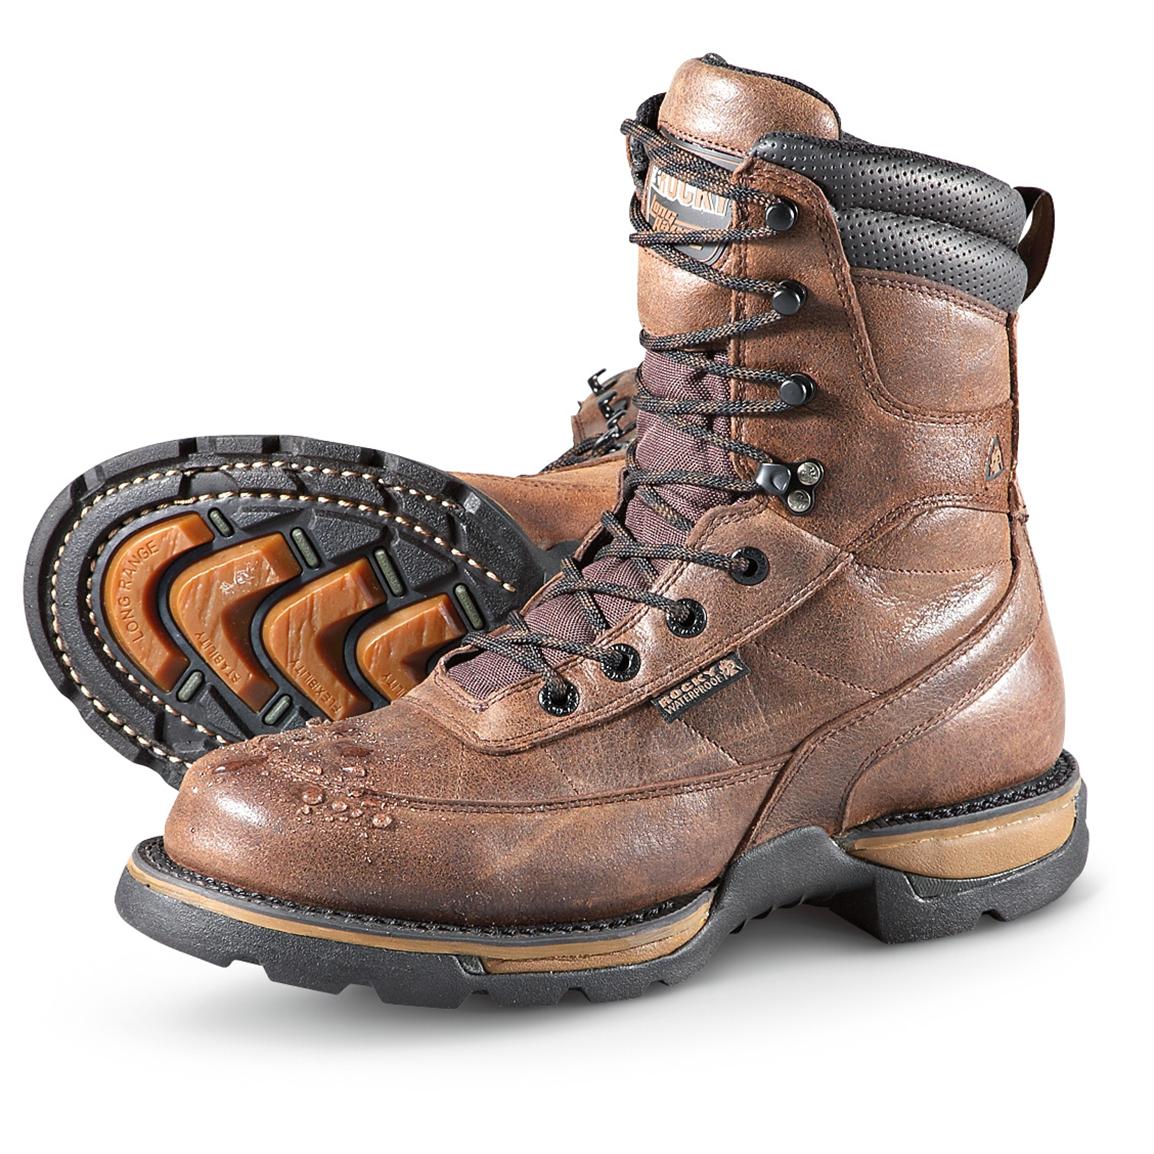 Men's Rocky® Long Range Waterproof Boots, Coffee - 222211, Hunting ...